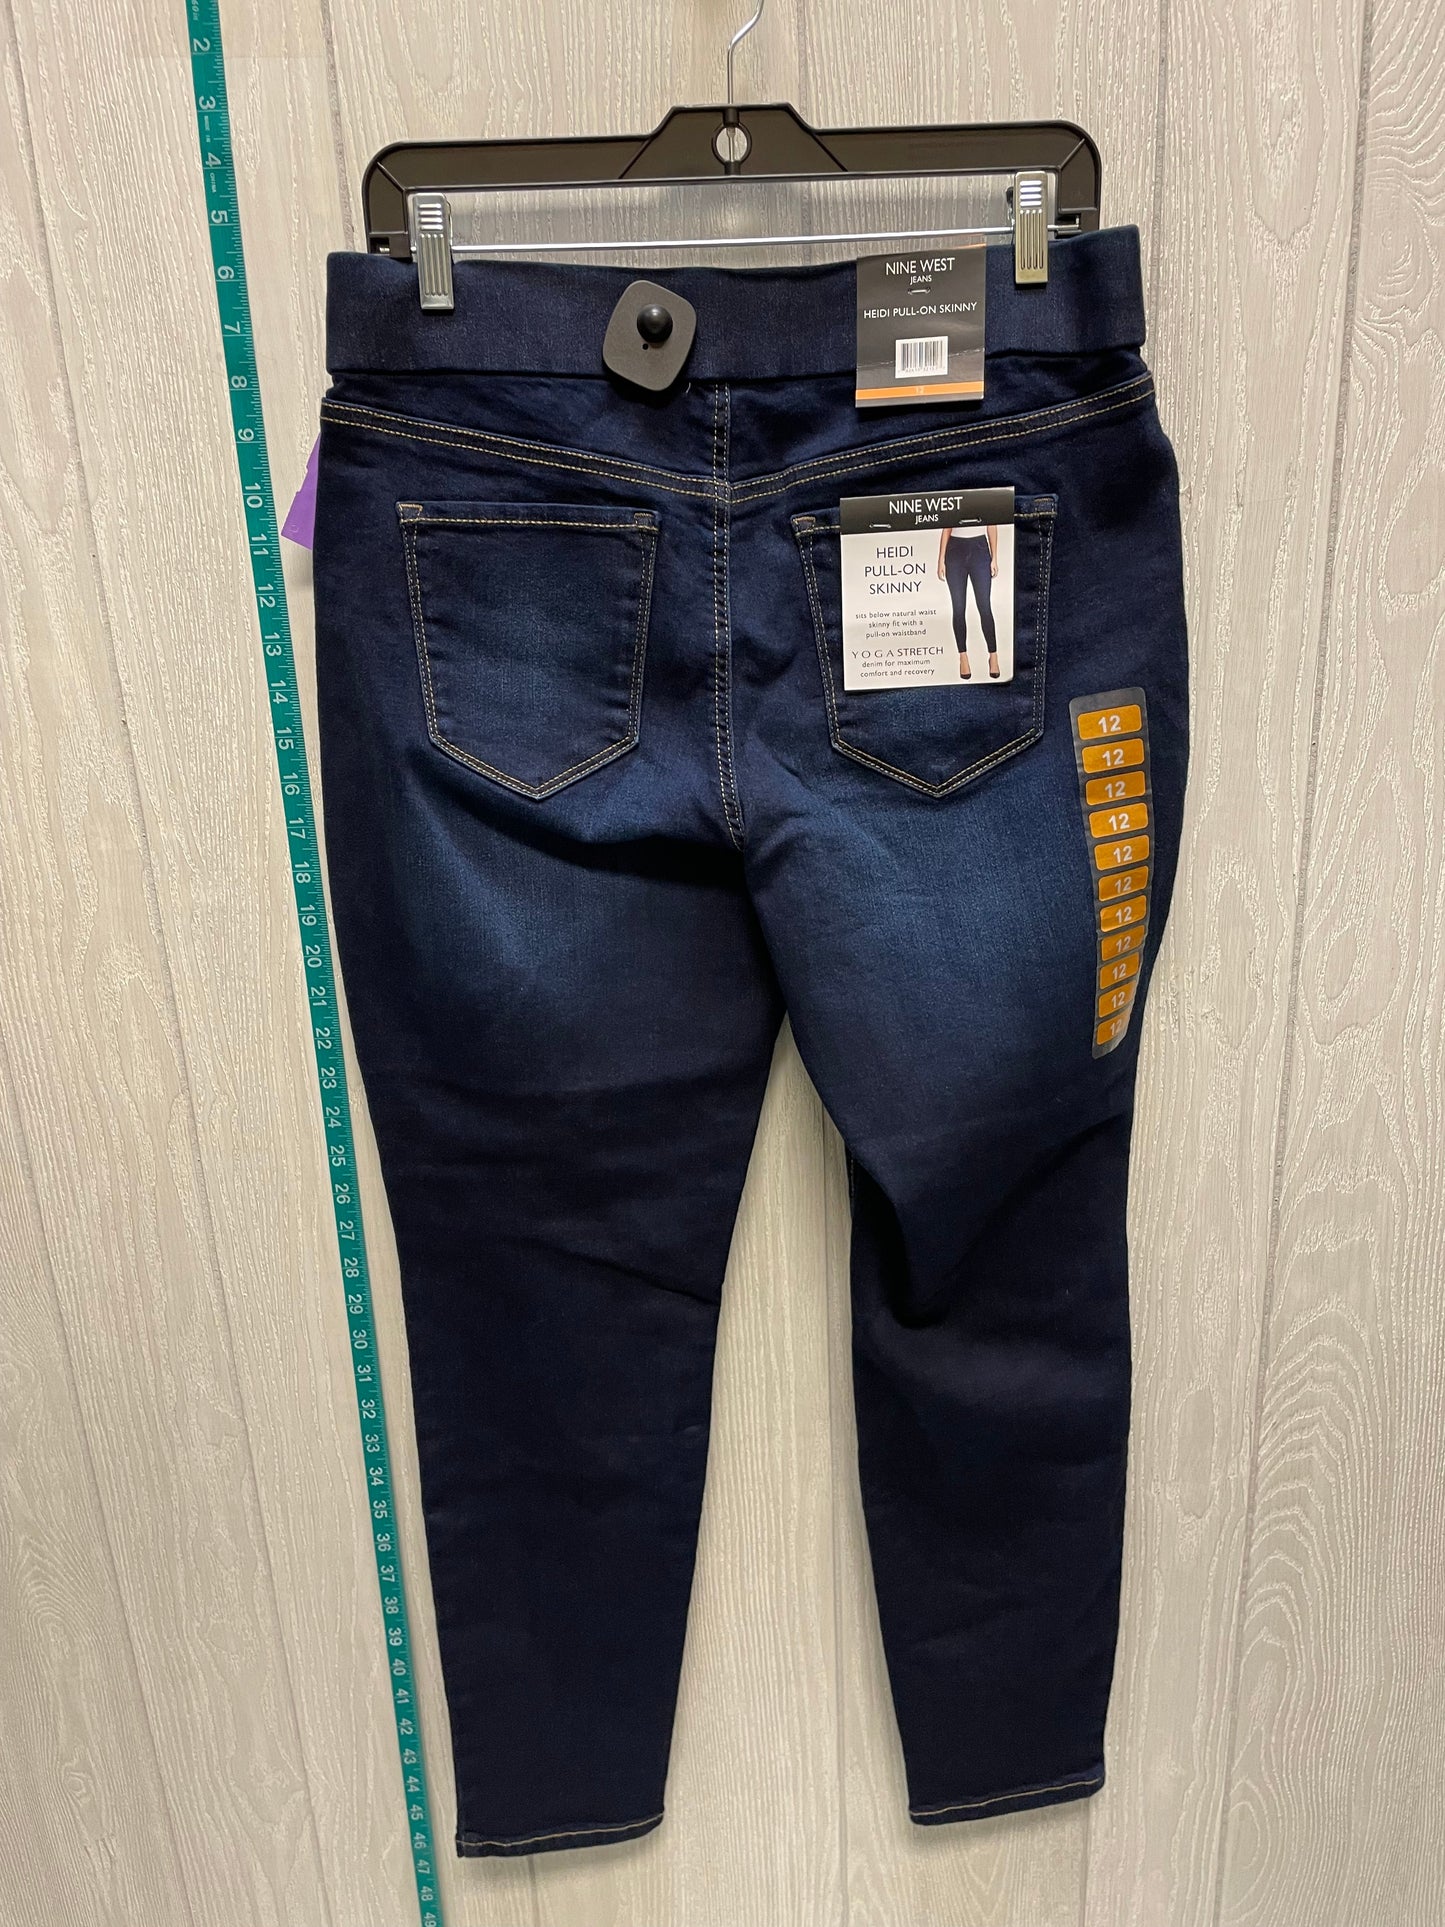 Blue Denim Jeans Jeggings Nine West Apparel, Size 12